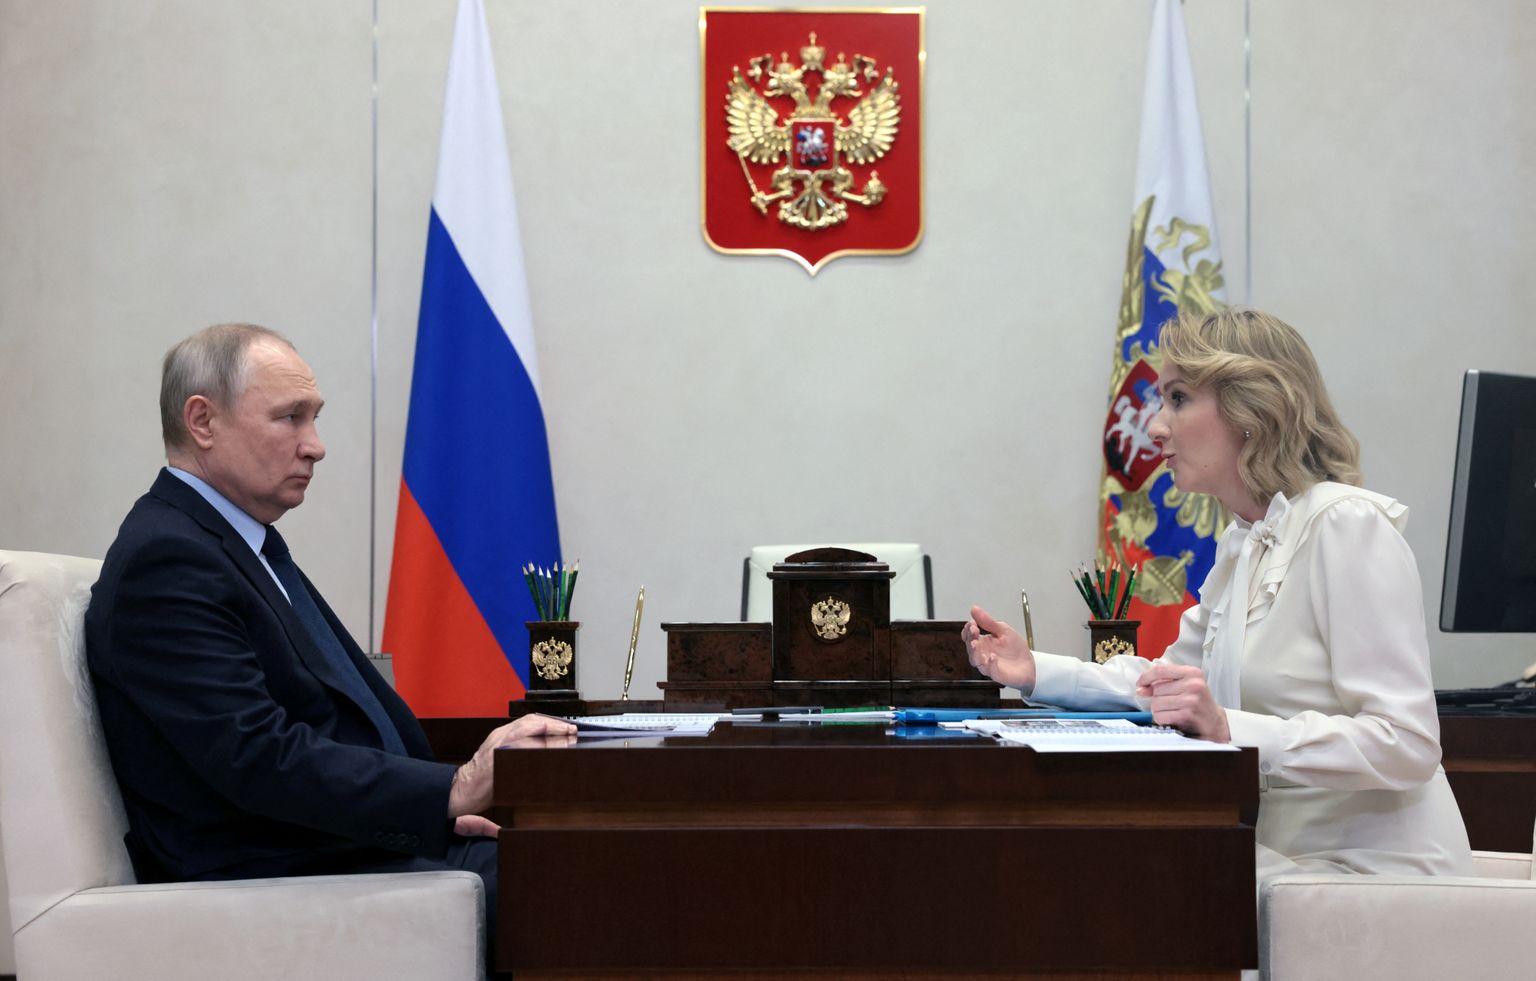 Venemaa president Vladimir Putin ja lasteombudsman Maria Lvova-Belova rääkisid avalikult laste viimisest Ukraina okupeeritud aladelt Venemaale ning seda vestlust näidati ka televisioonis.